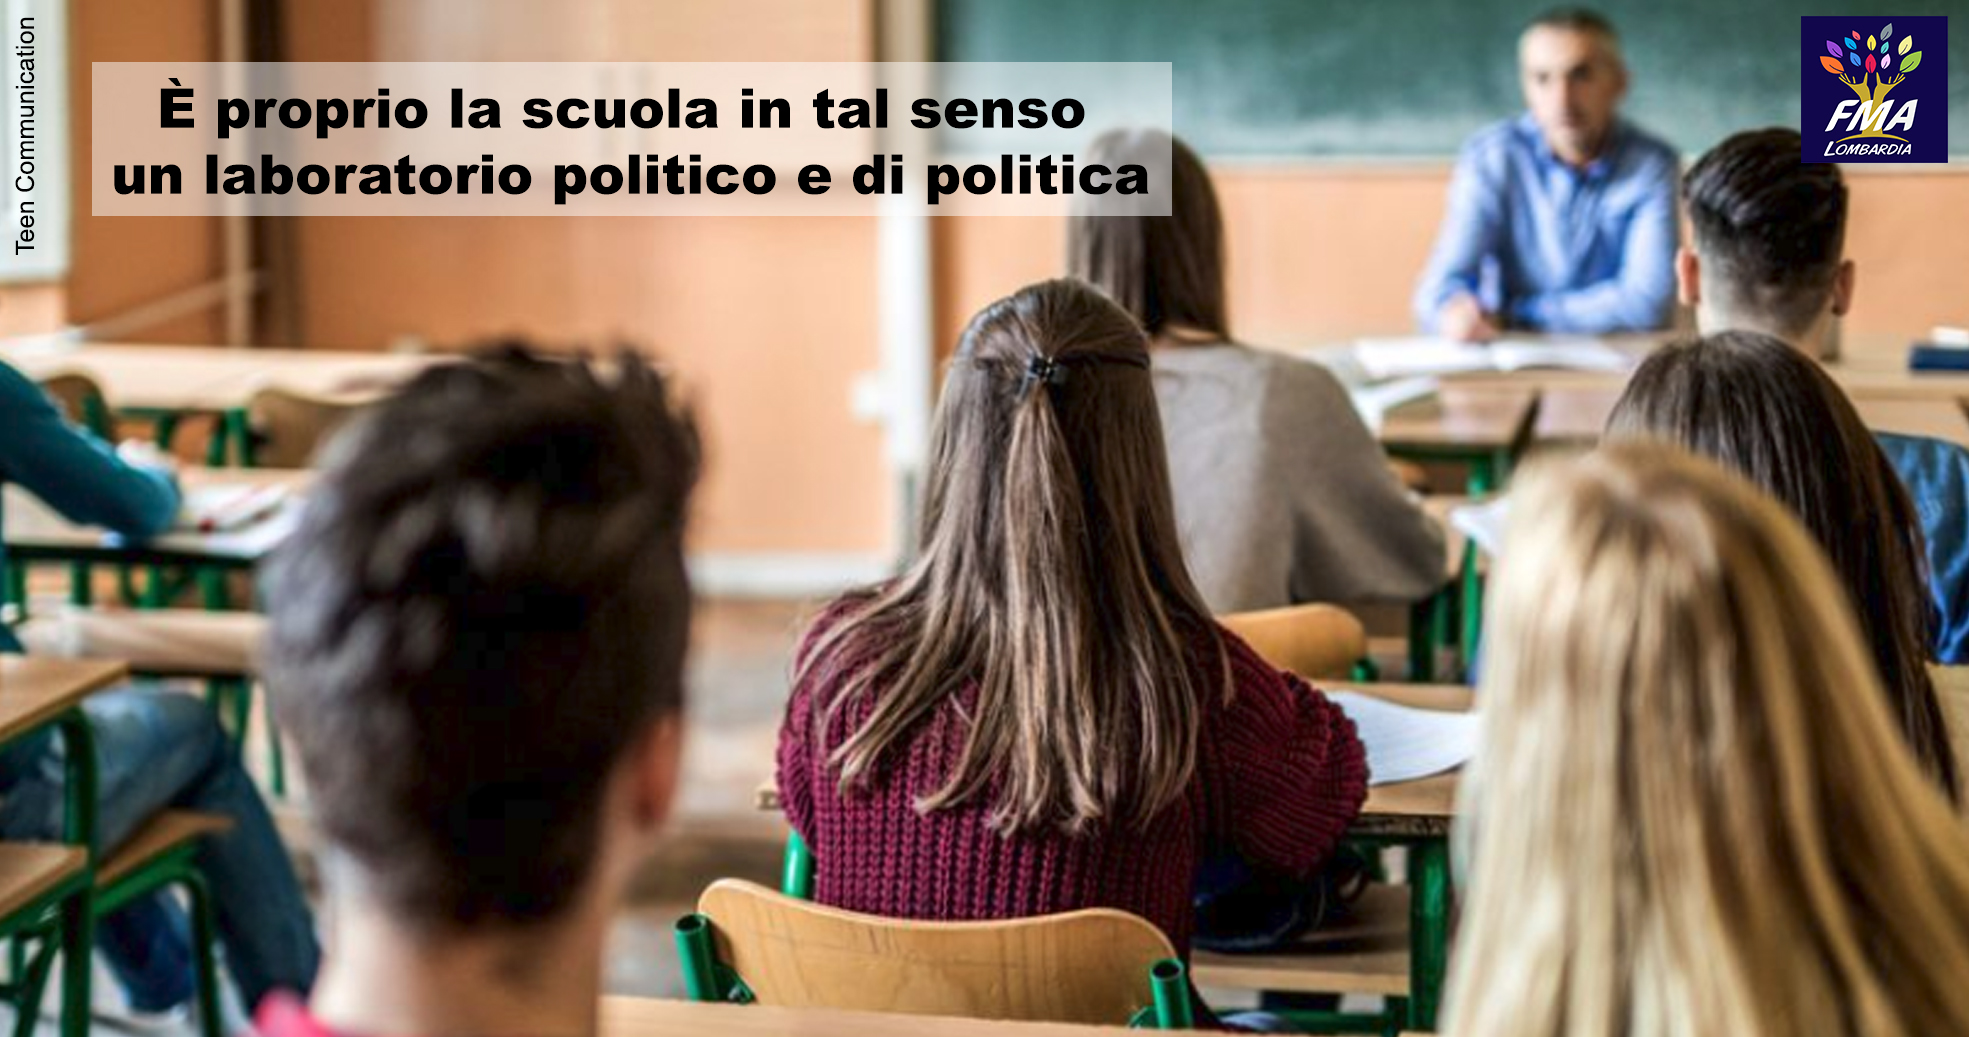 A scuola si può fare politica?